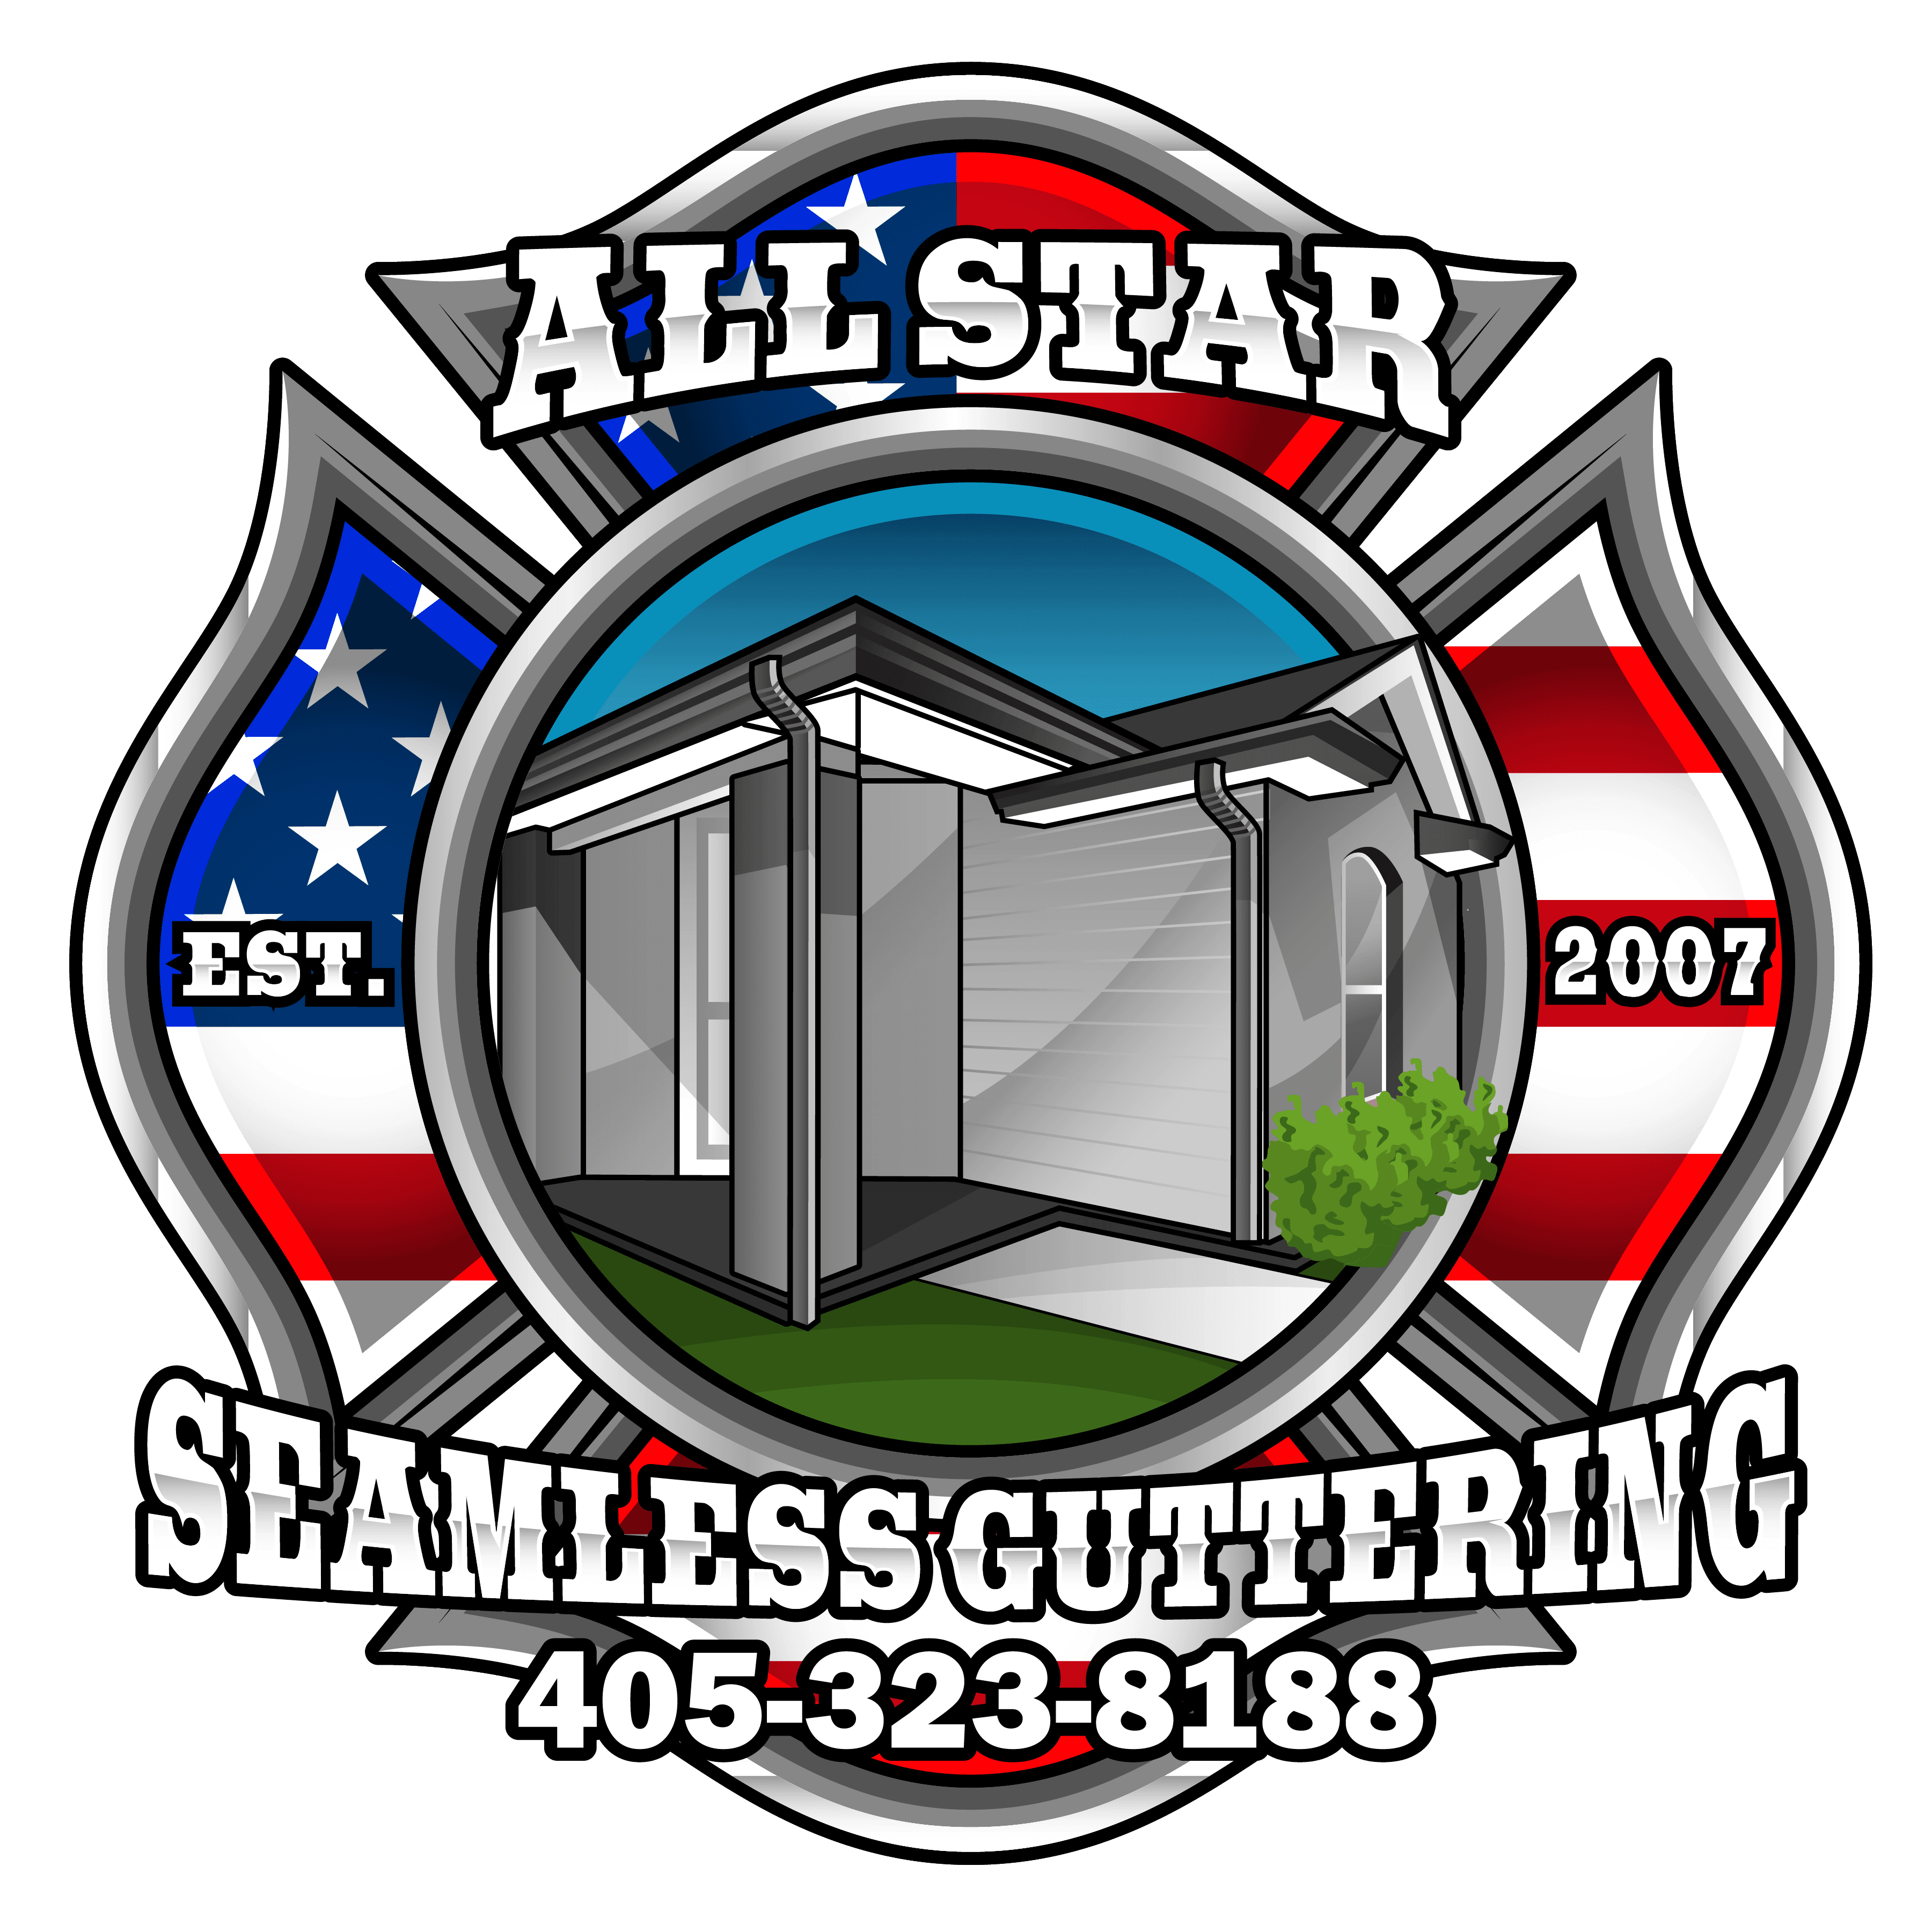 All Star Seamless Guttering LLC